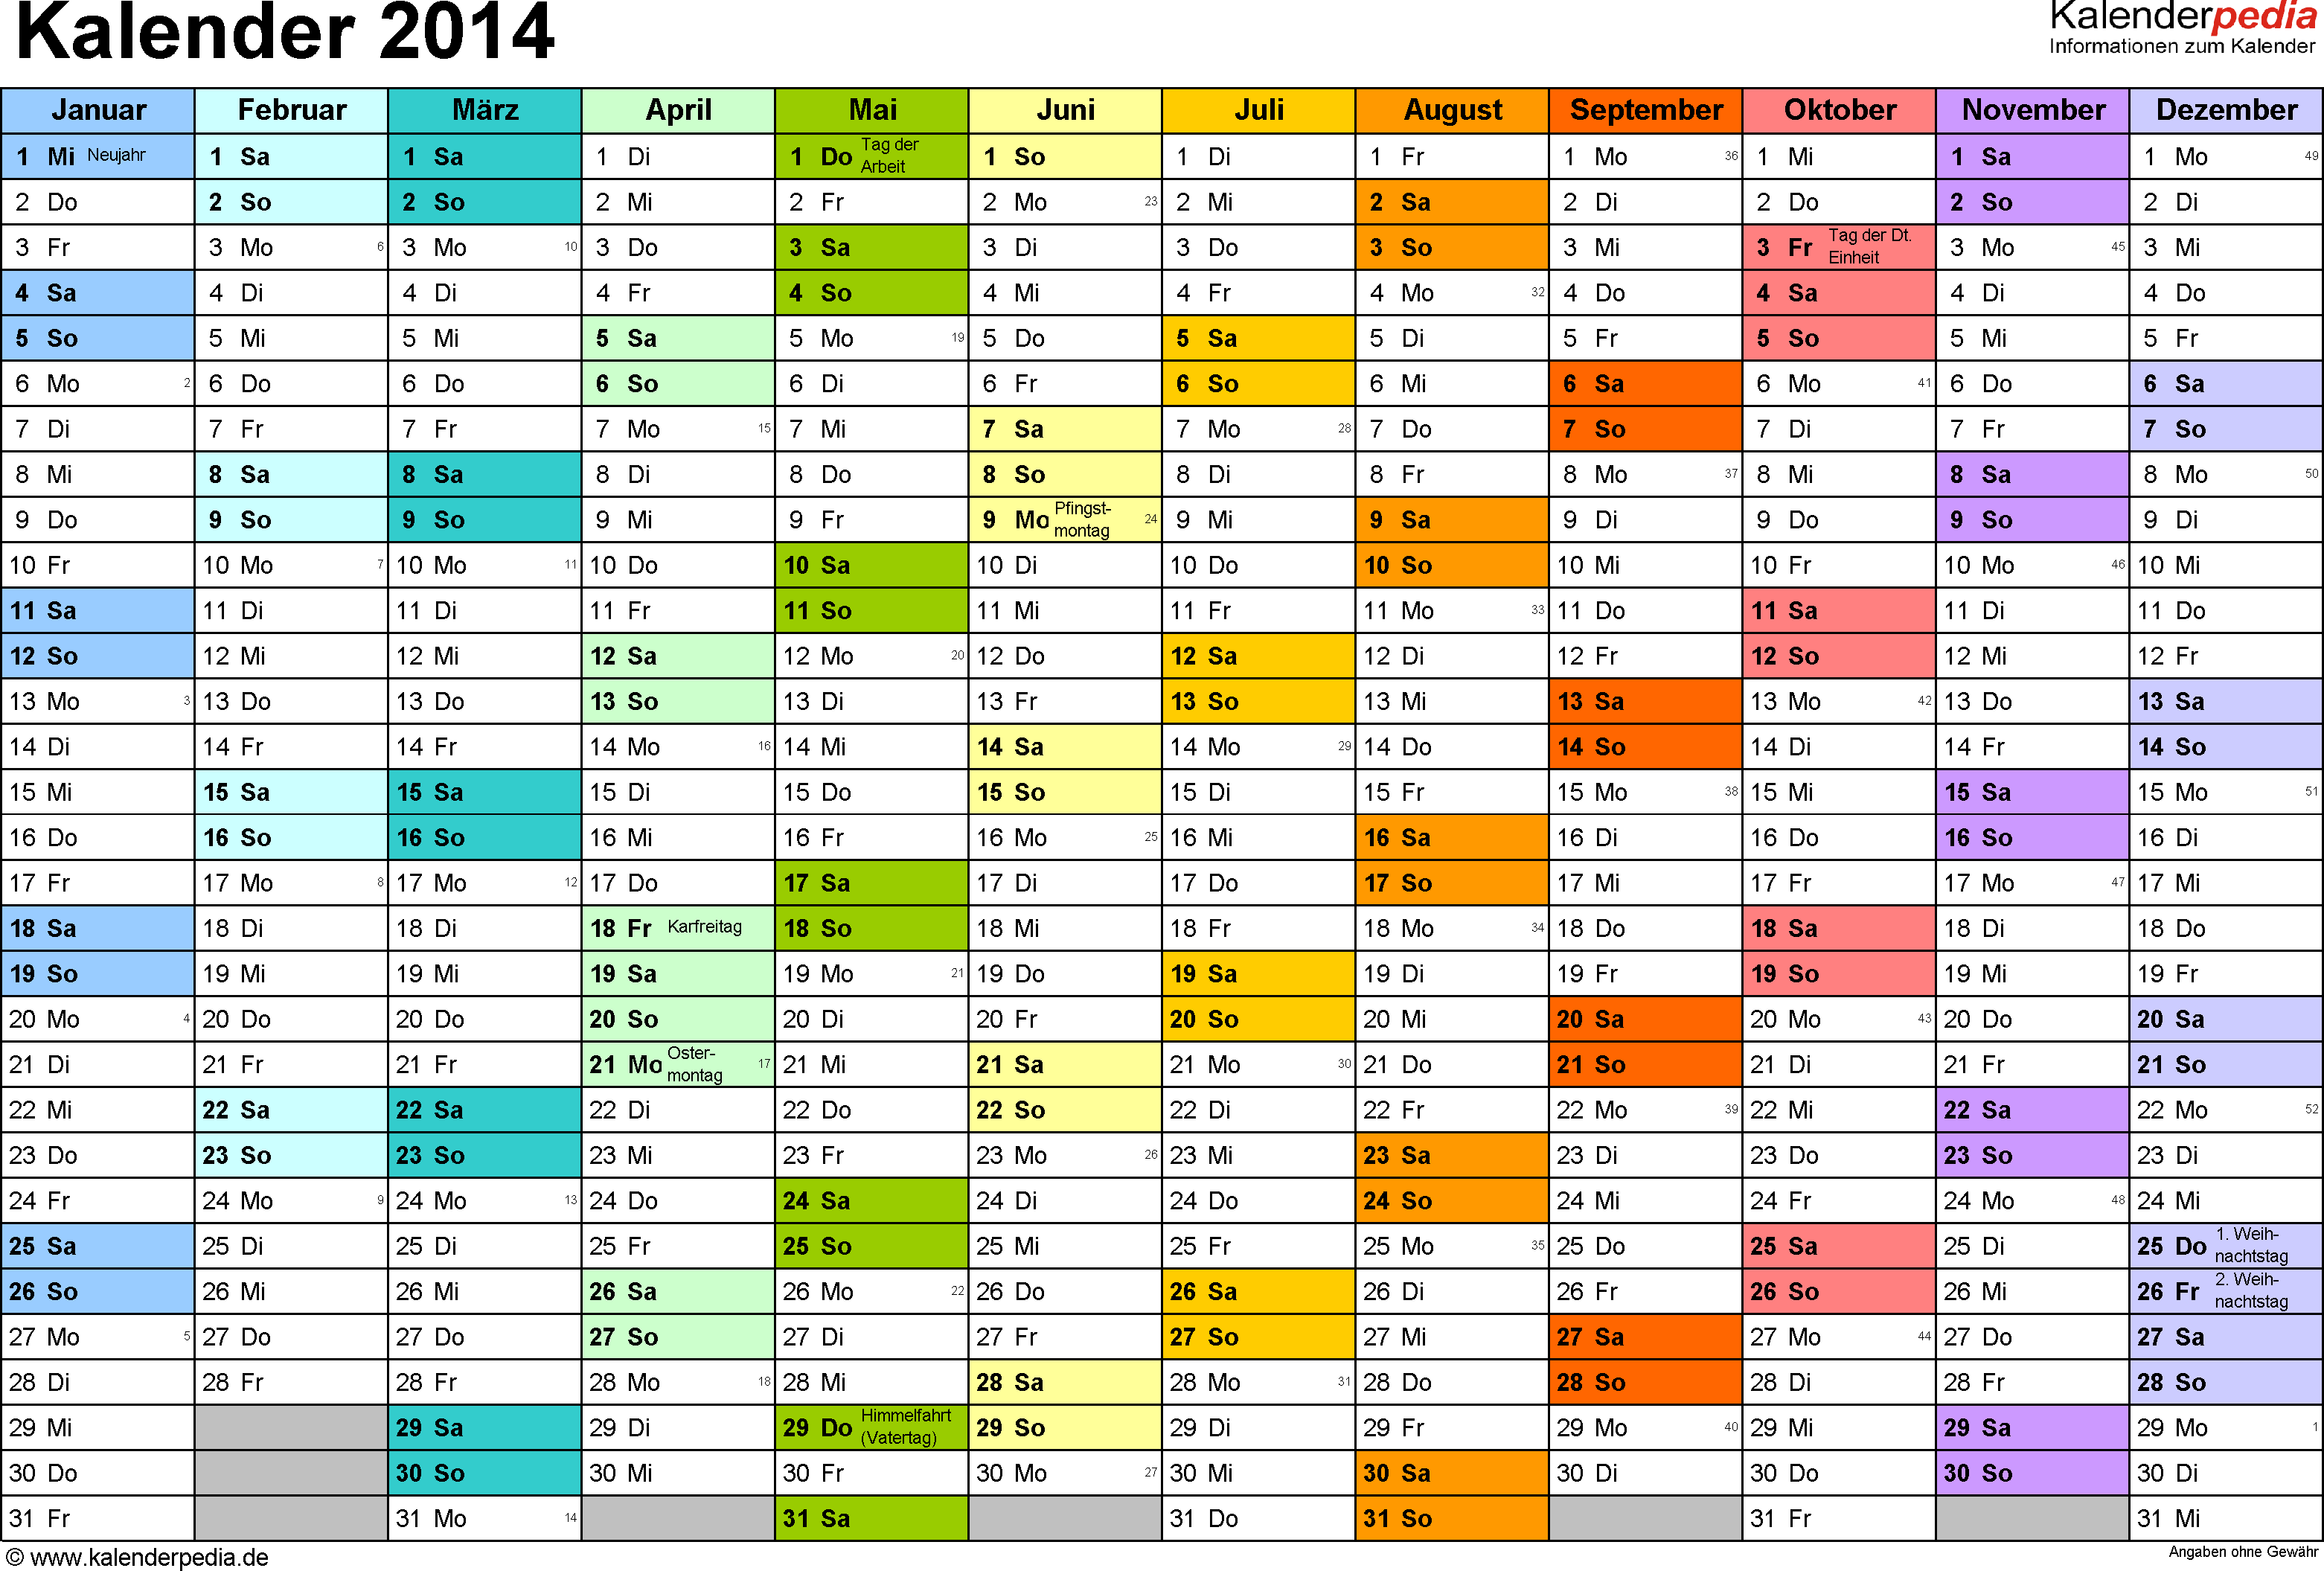 Kalender 2014 Zum Ausdrucken Als Pdf 14 Vorlagen Kalender 2018 Kalender 2015 Kalender Vorlagen